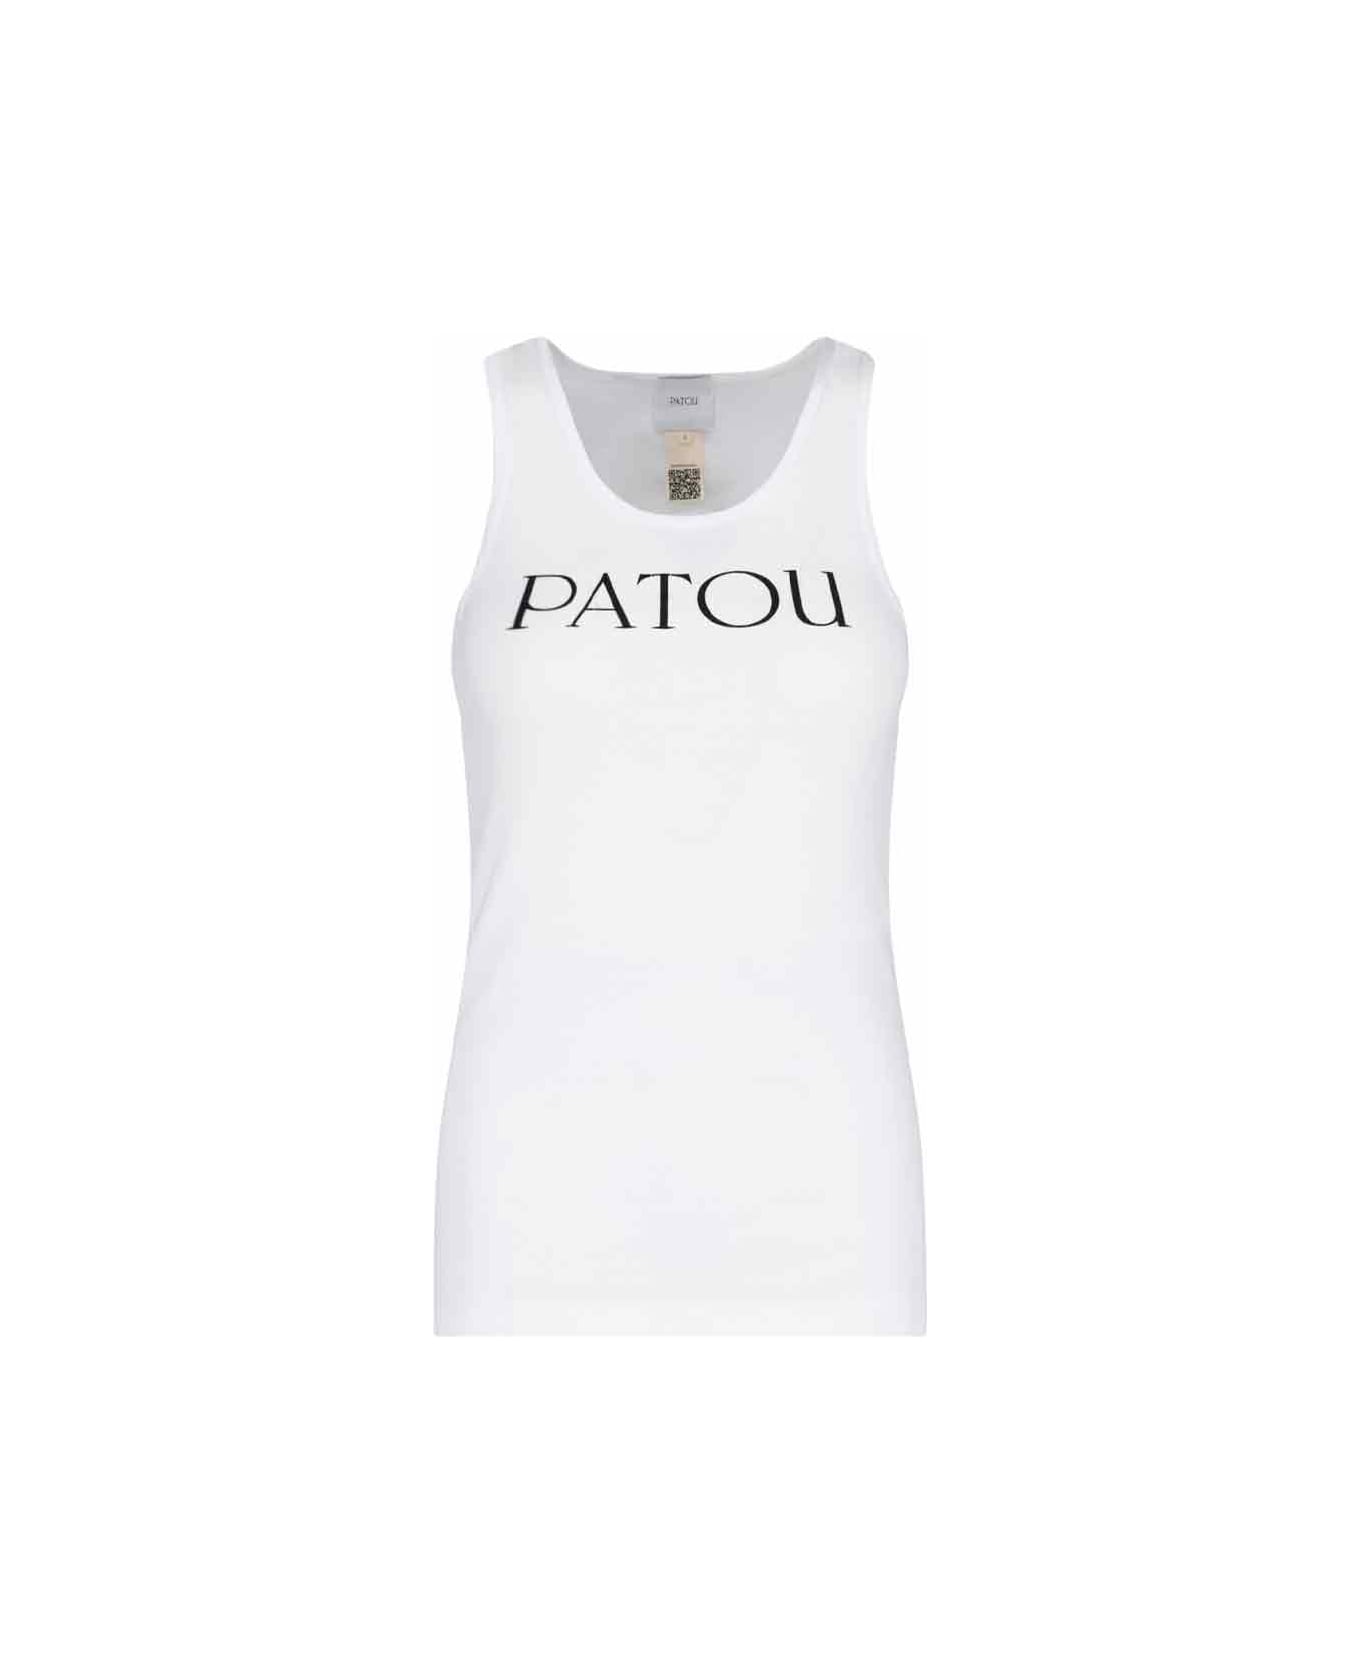 Patou Logo Top - White タンクトップ